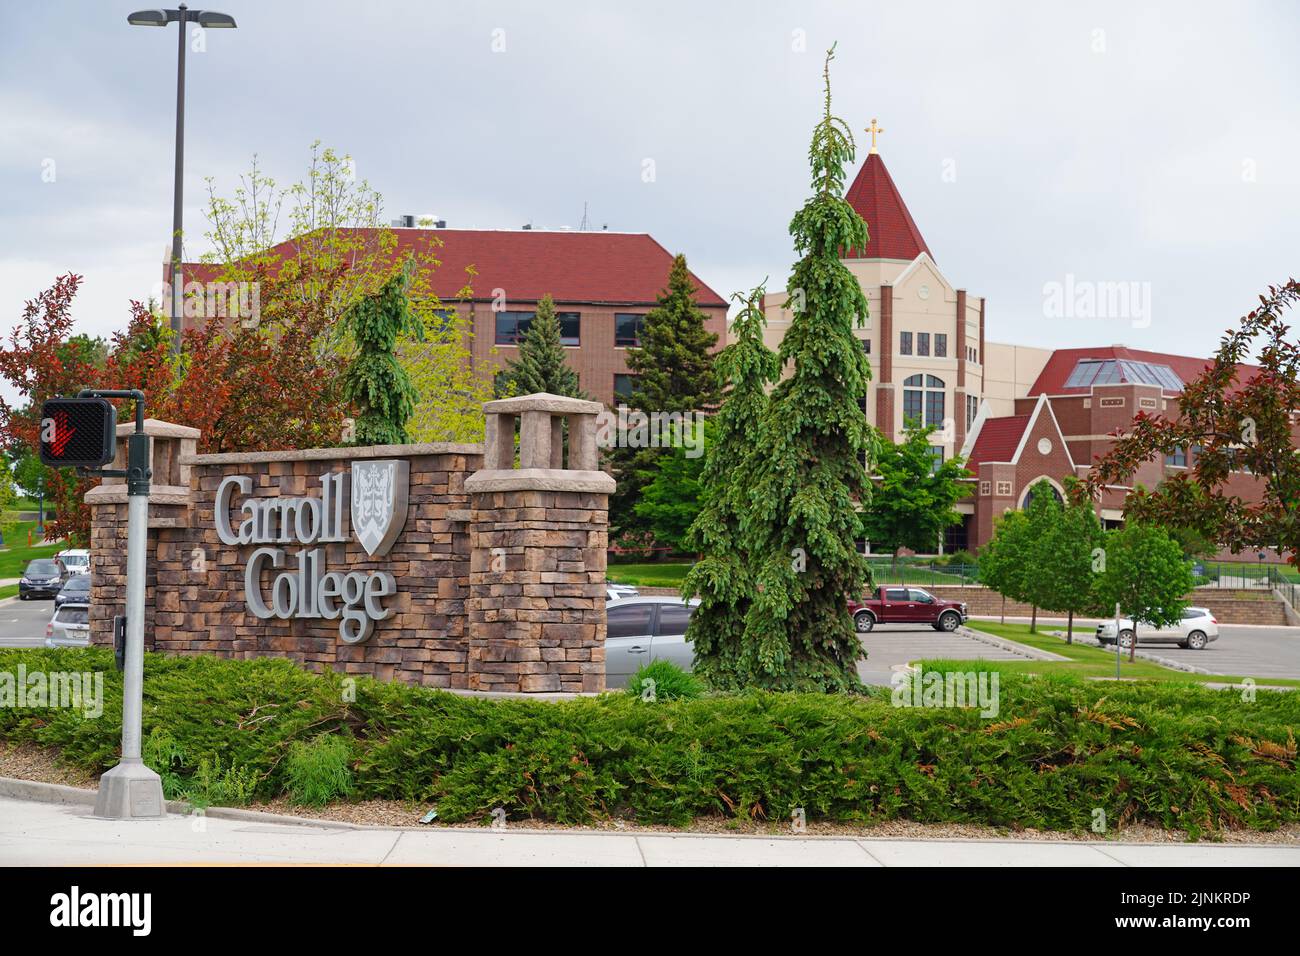 HELENA, MT -10 JUN 2021- Vista del campus universitario de Carroll College, un colegio privado católico ubicado en Helena, Montana, Estados Unidos. Foto de stock